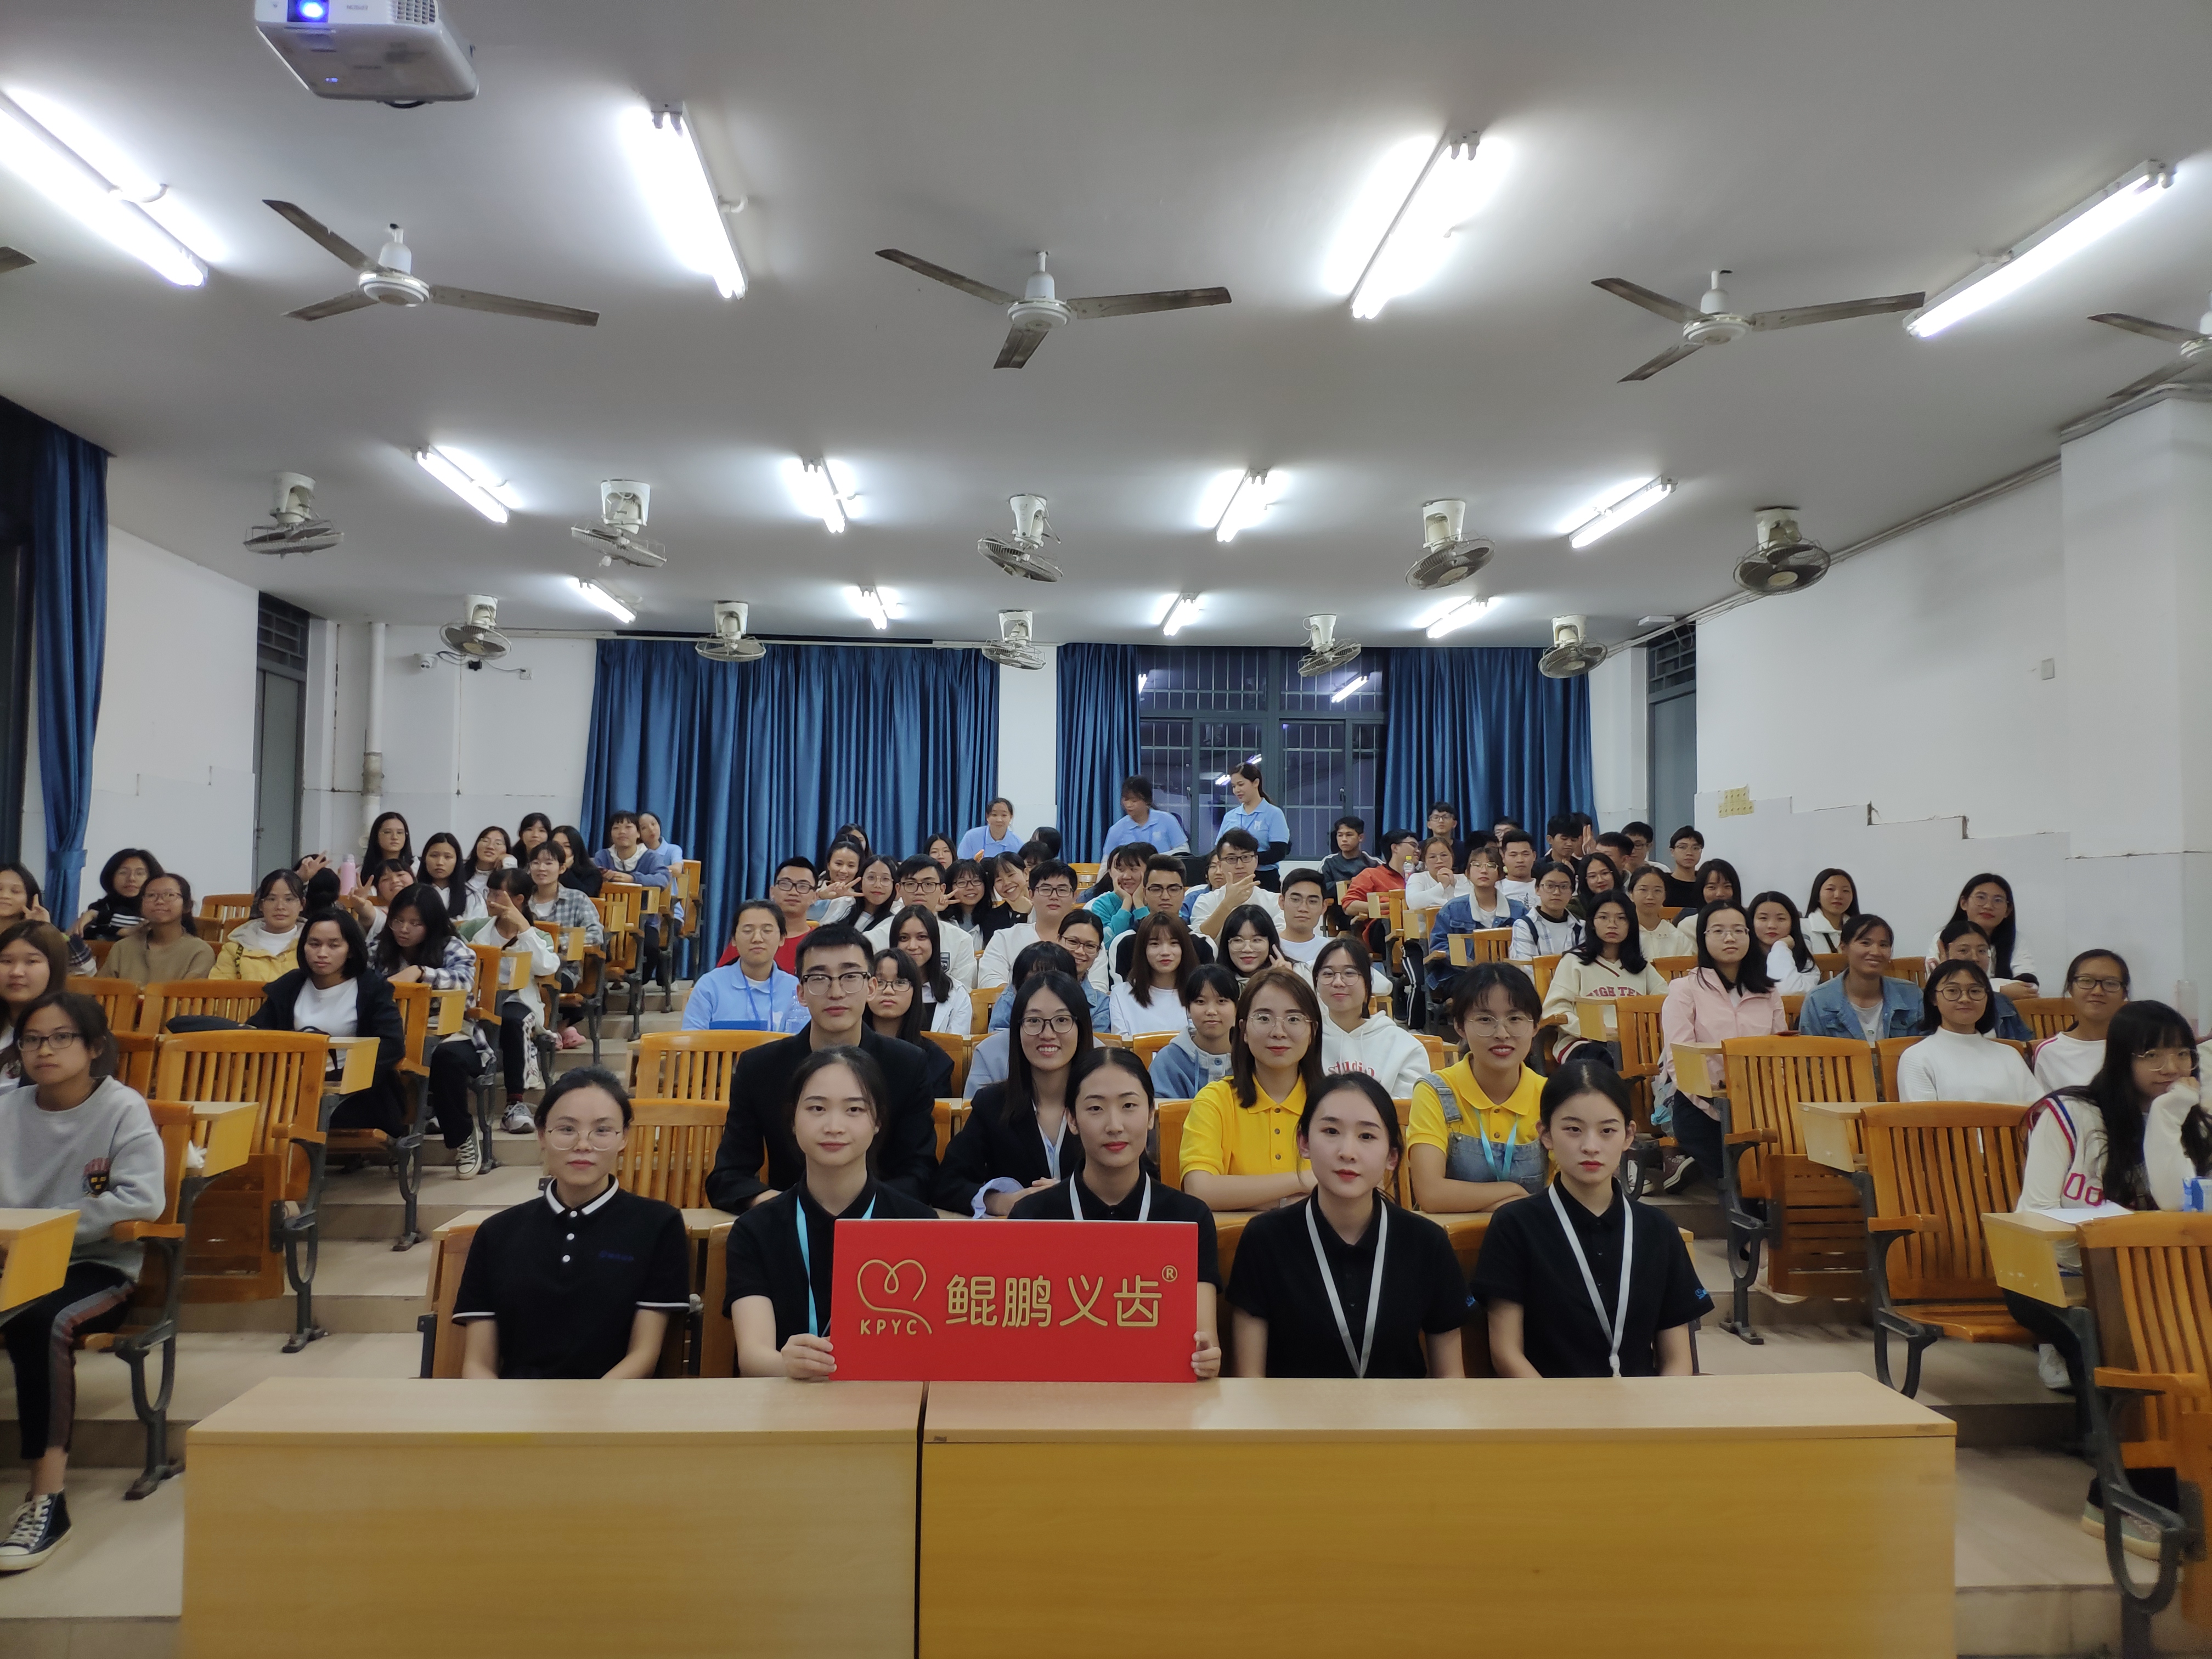 校企合作共建，深化教学改革 ------赴惠州卫生职业技术学院数字化椅旁专题讲座 